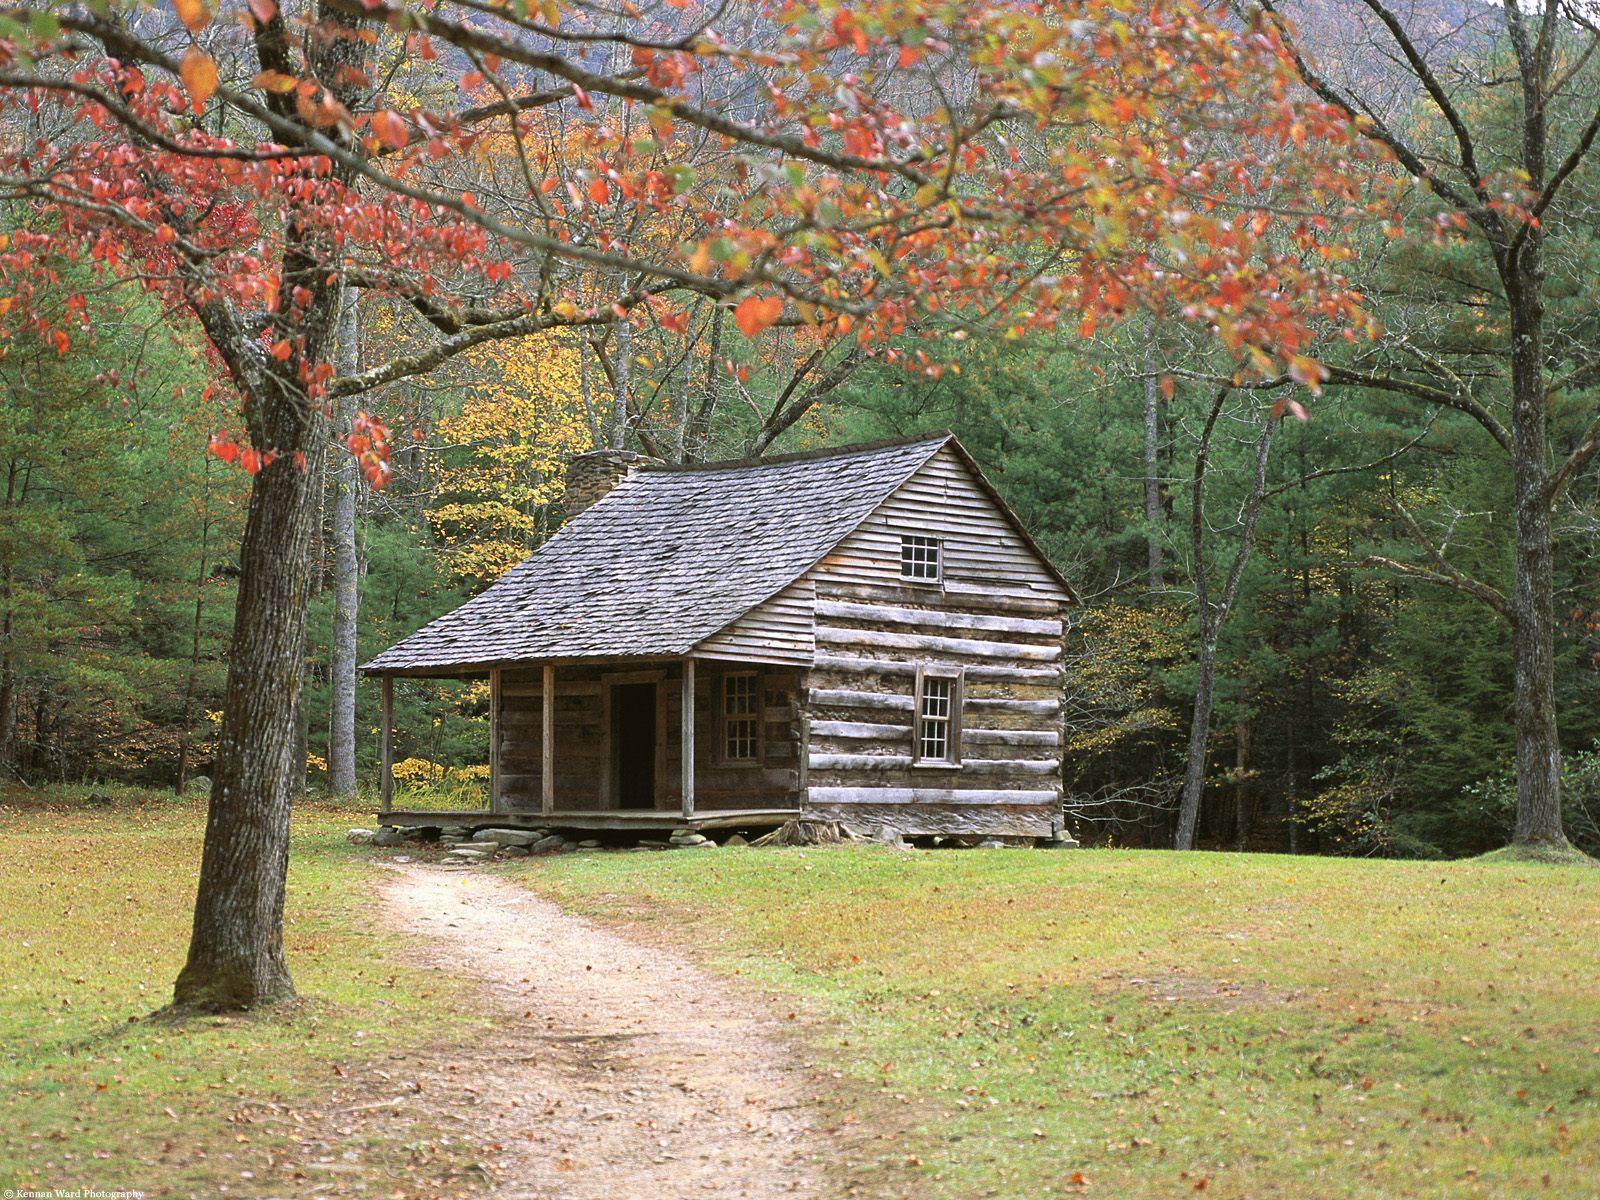 Historic log cabin free desktop background wallpaper image